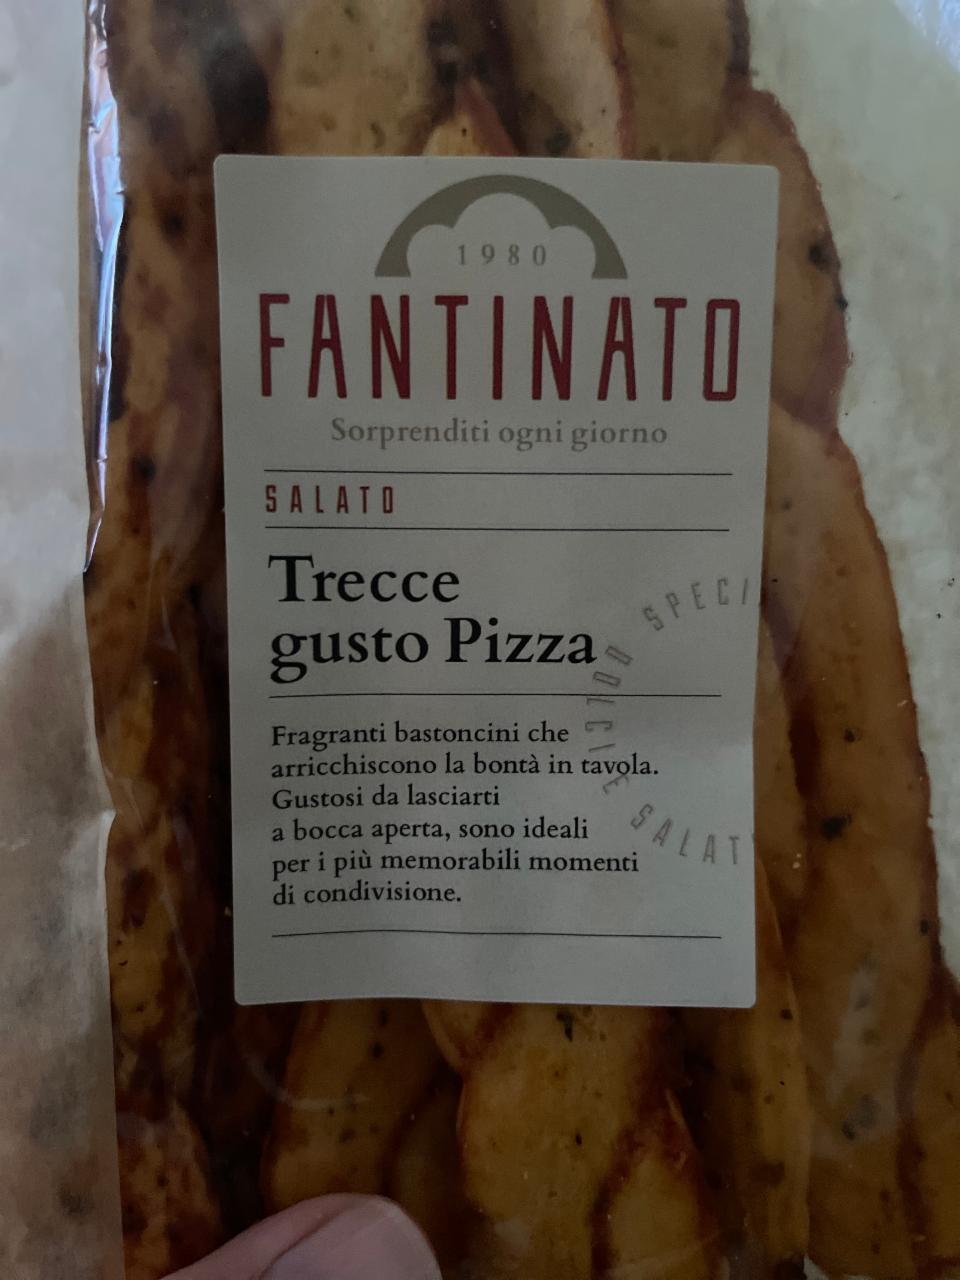 Fotografie - Trecce gusto Pizza Fantinato